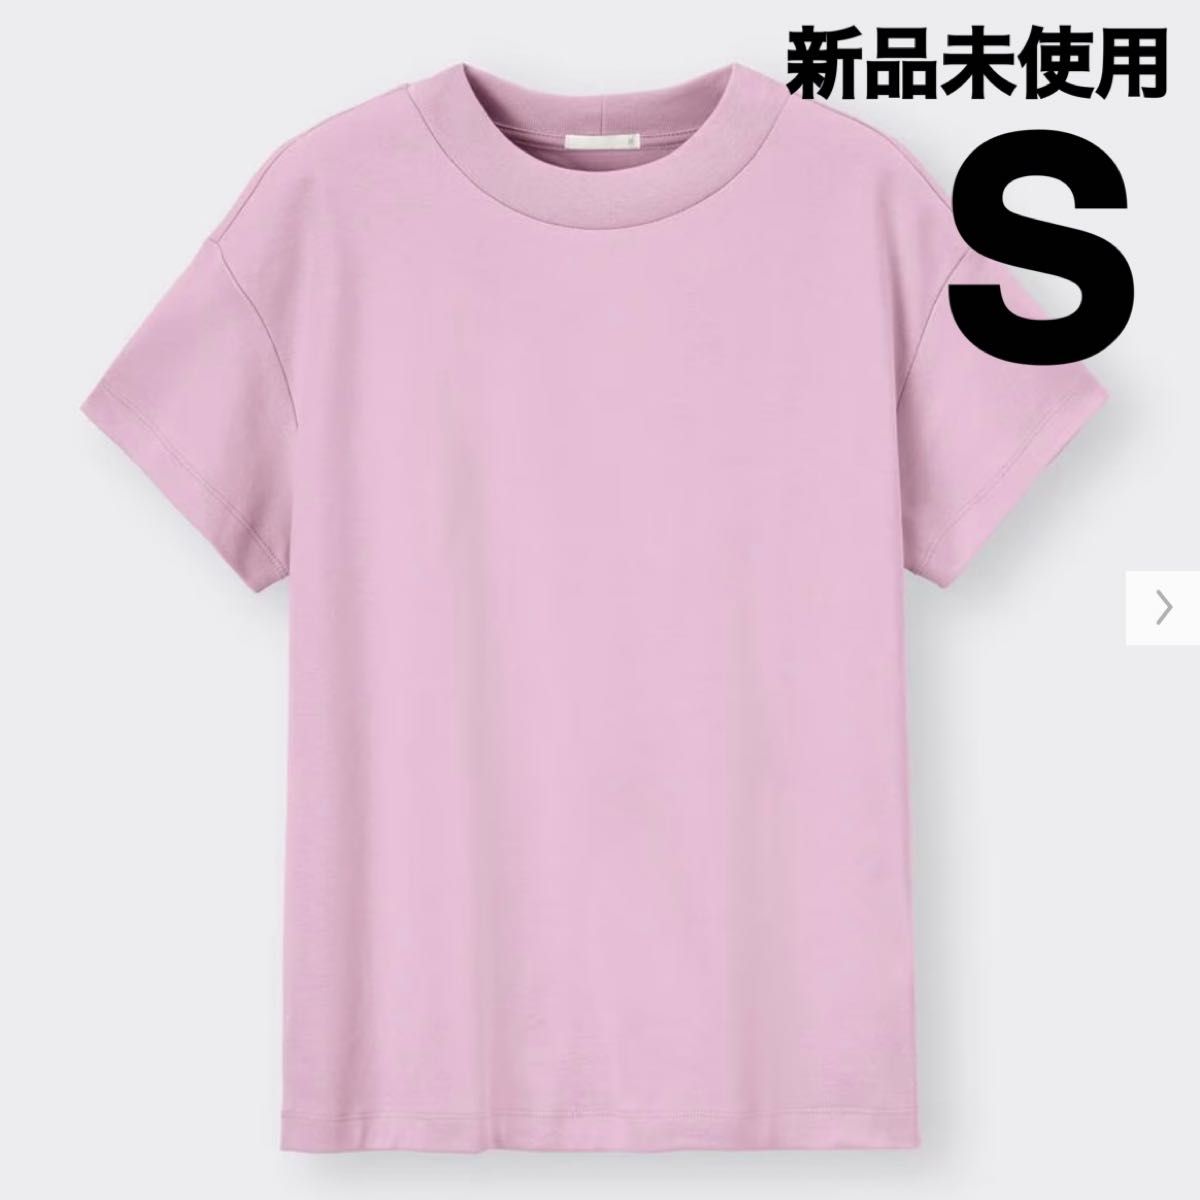 新品未使用 タグ付き GU スムースT Sサイズ半袖 ピンク ジーユー モックネック Tシャツ ジーユー Tシャツ 完売 半袖